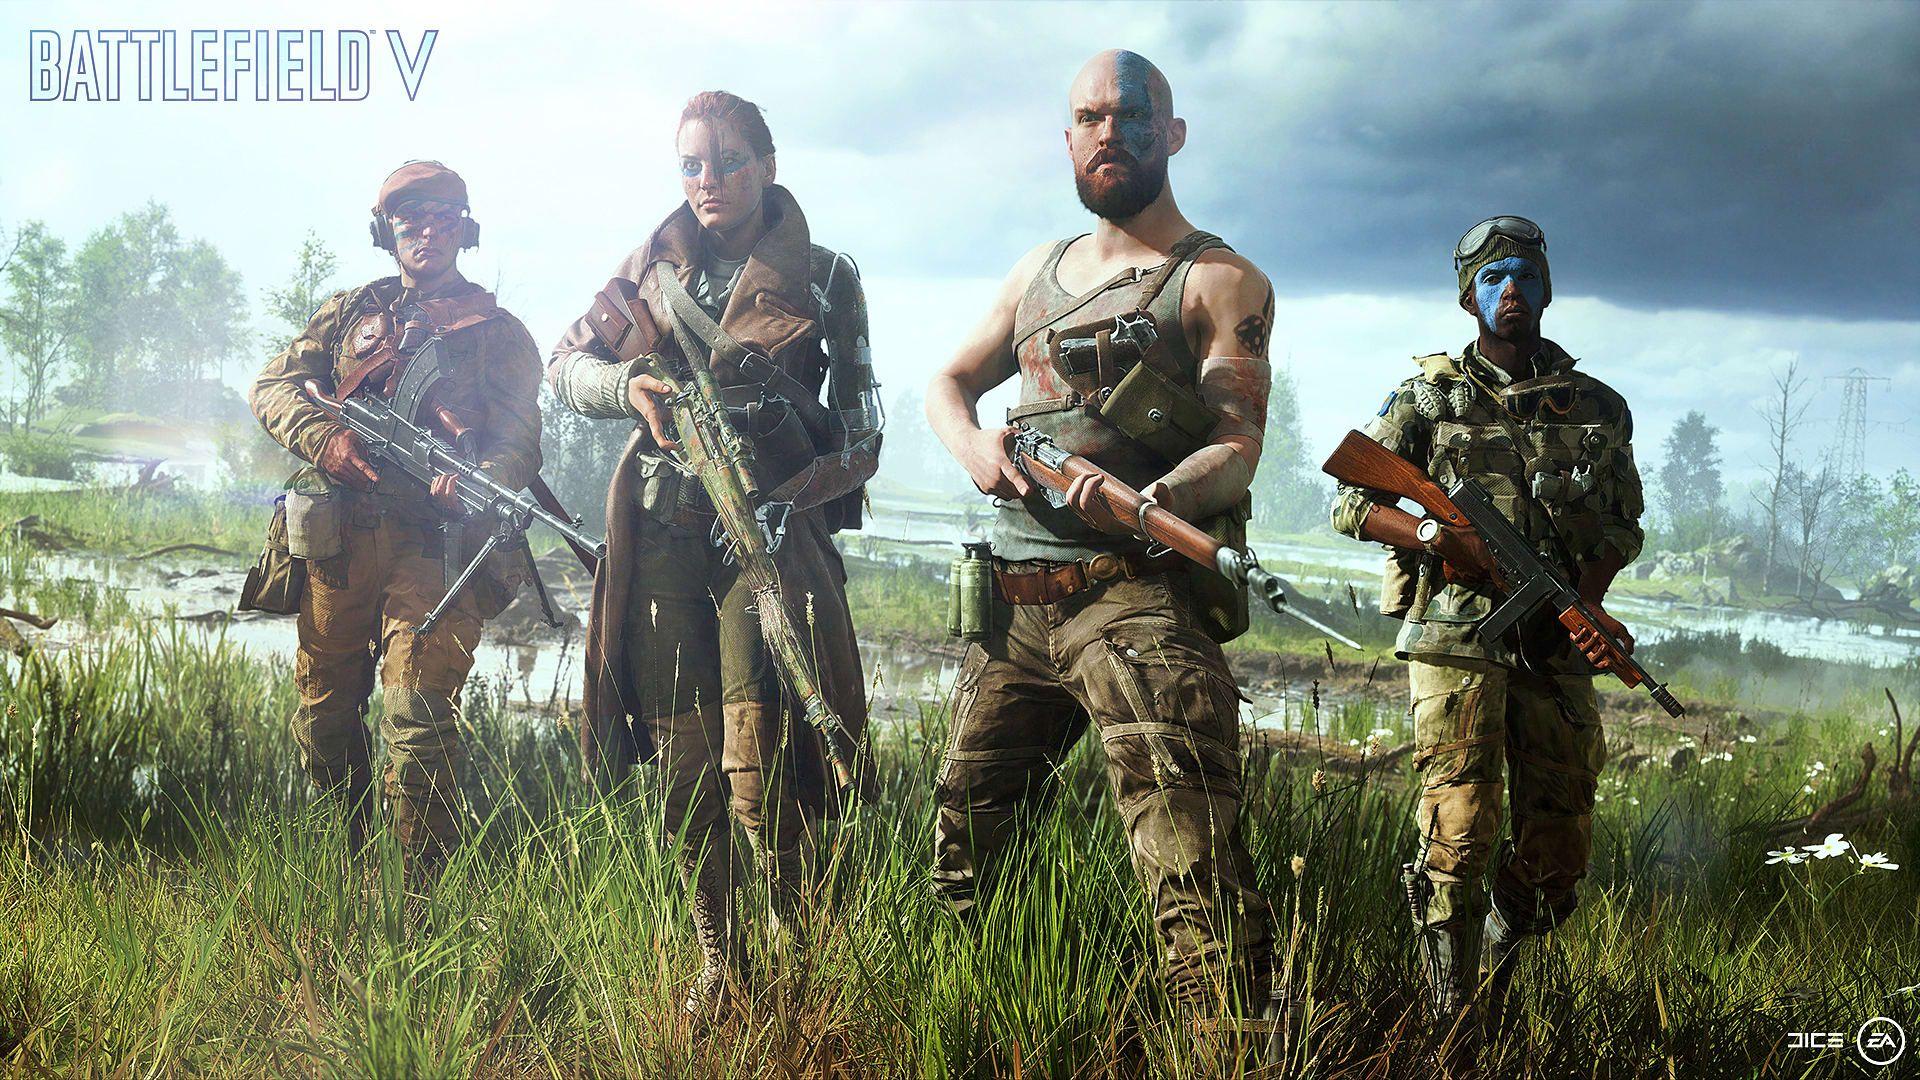 Battlefield 5 Wallpaper, Concept Art & Screenshots 1